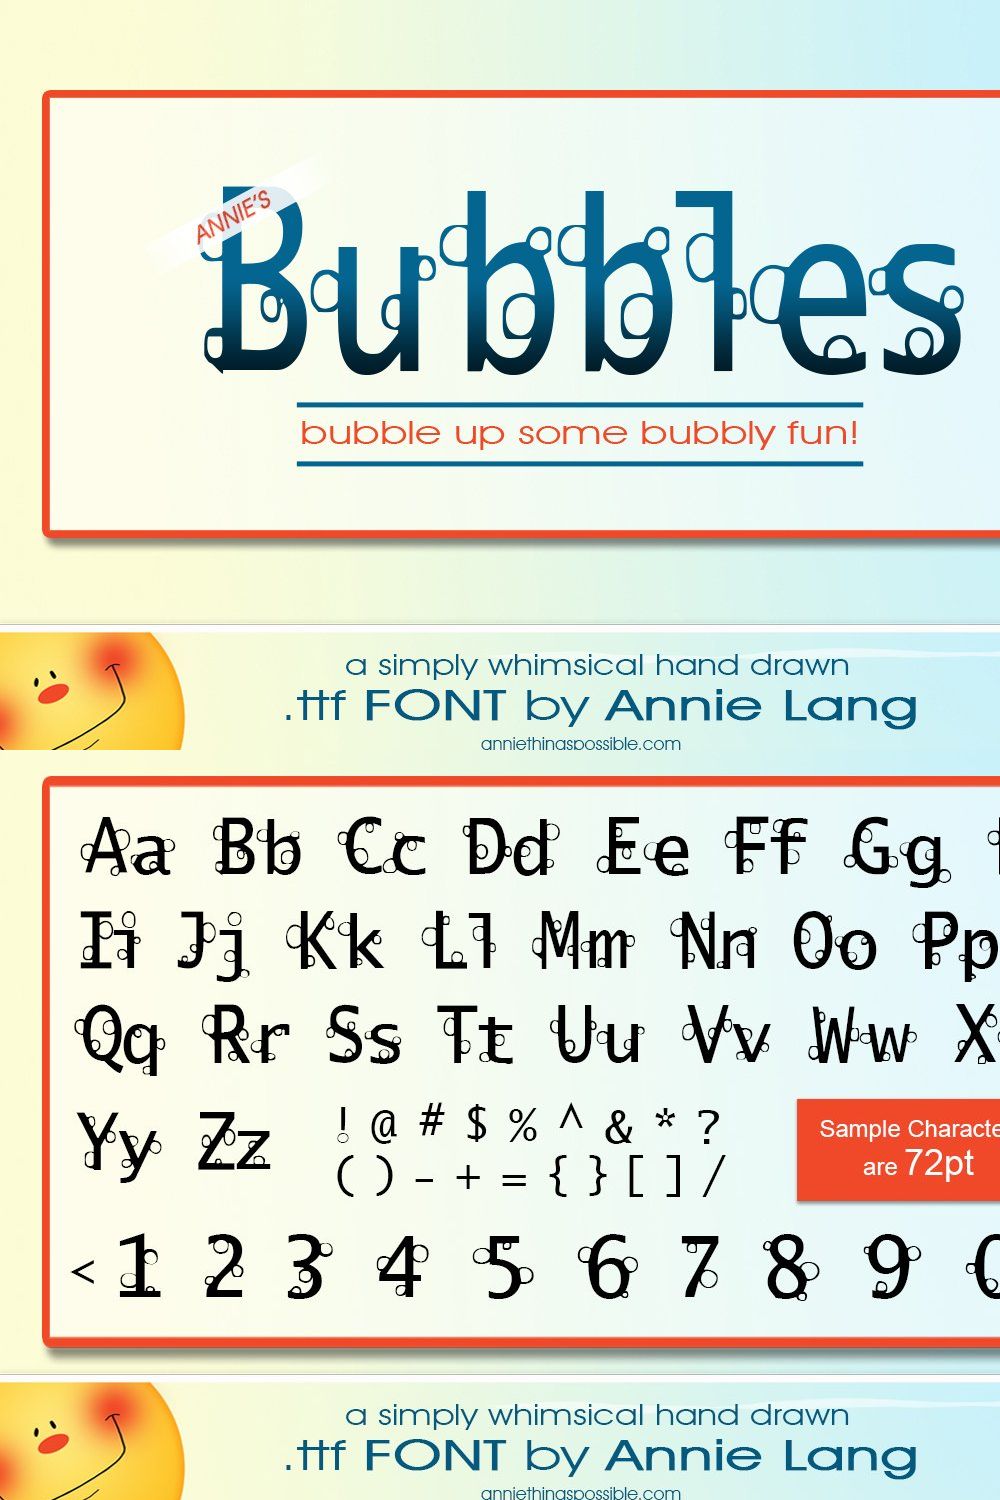 Annie's Bubbles Font pinterest preview image.